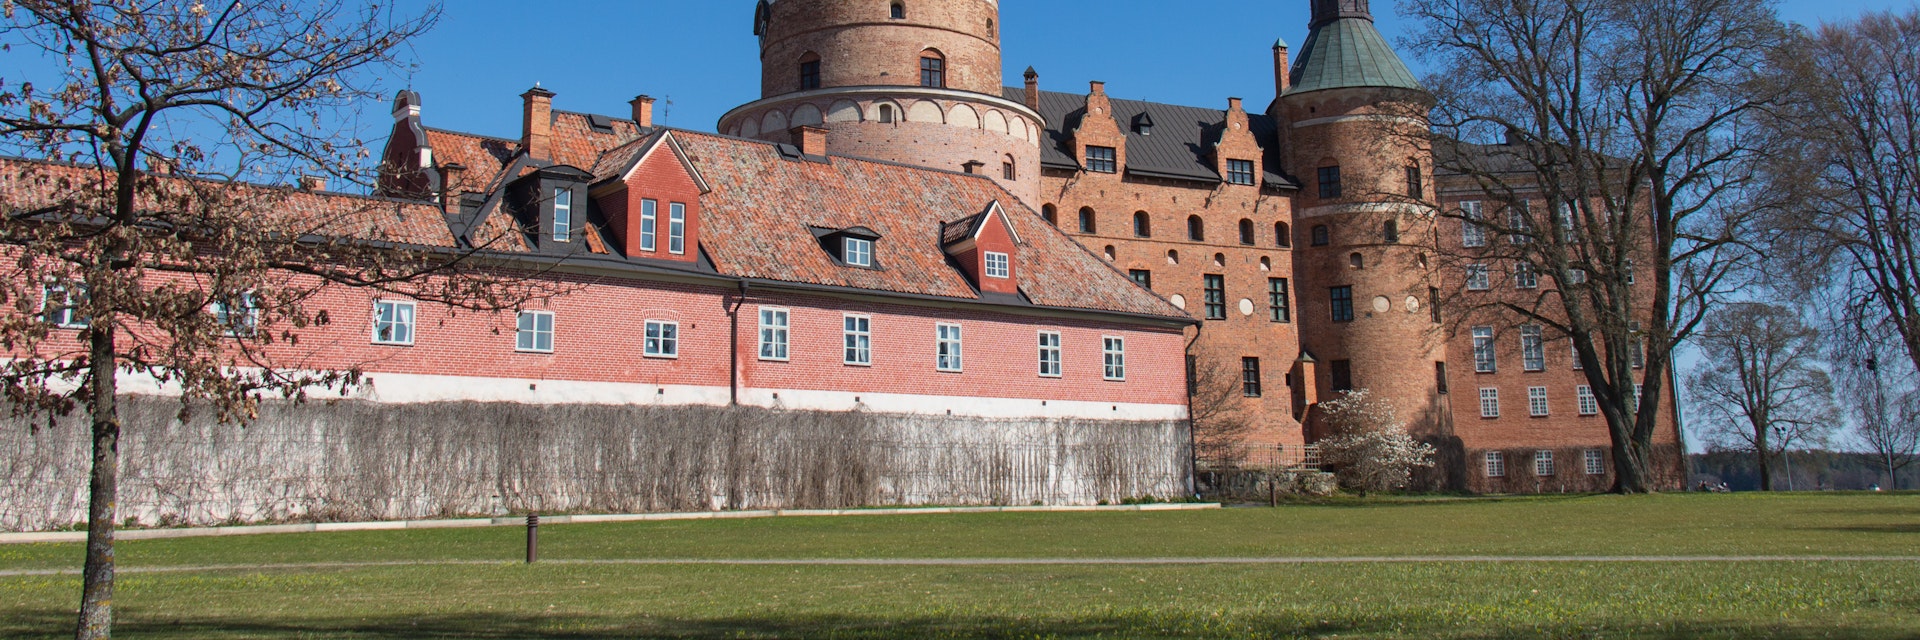 Gripsholm Castle in Mariefred, Sweden.